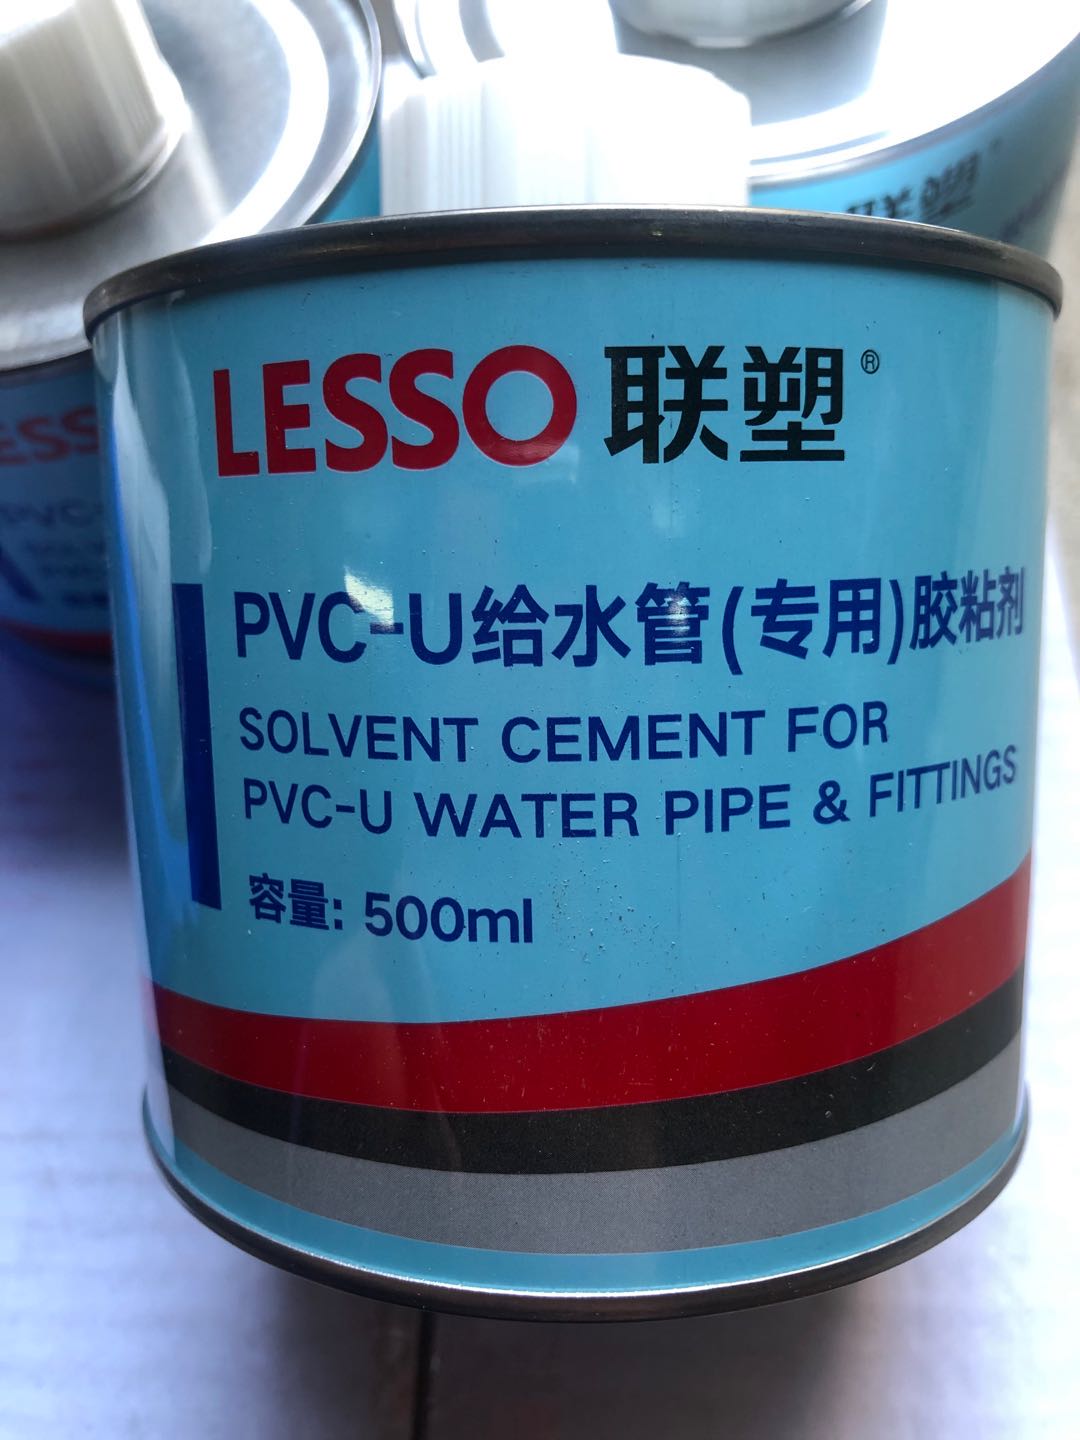 PVC 管道 PVC 给水管专用粘结剂